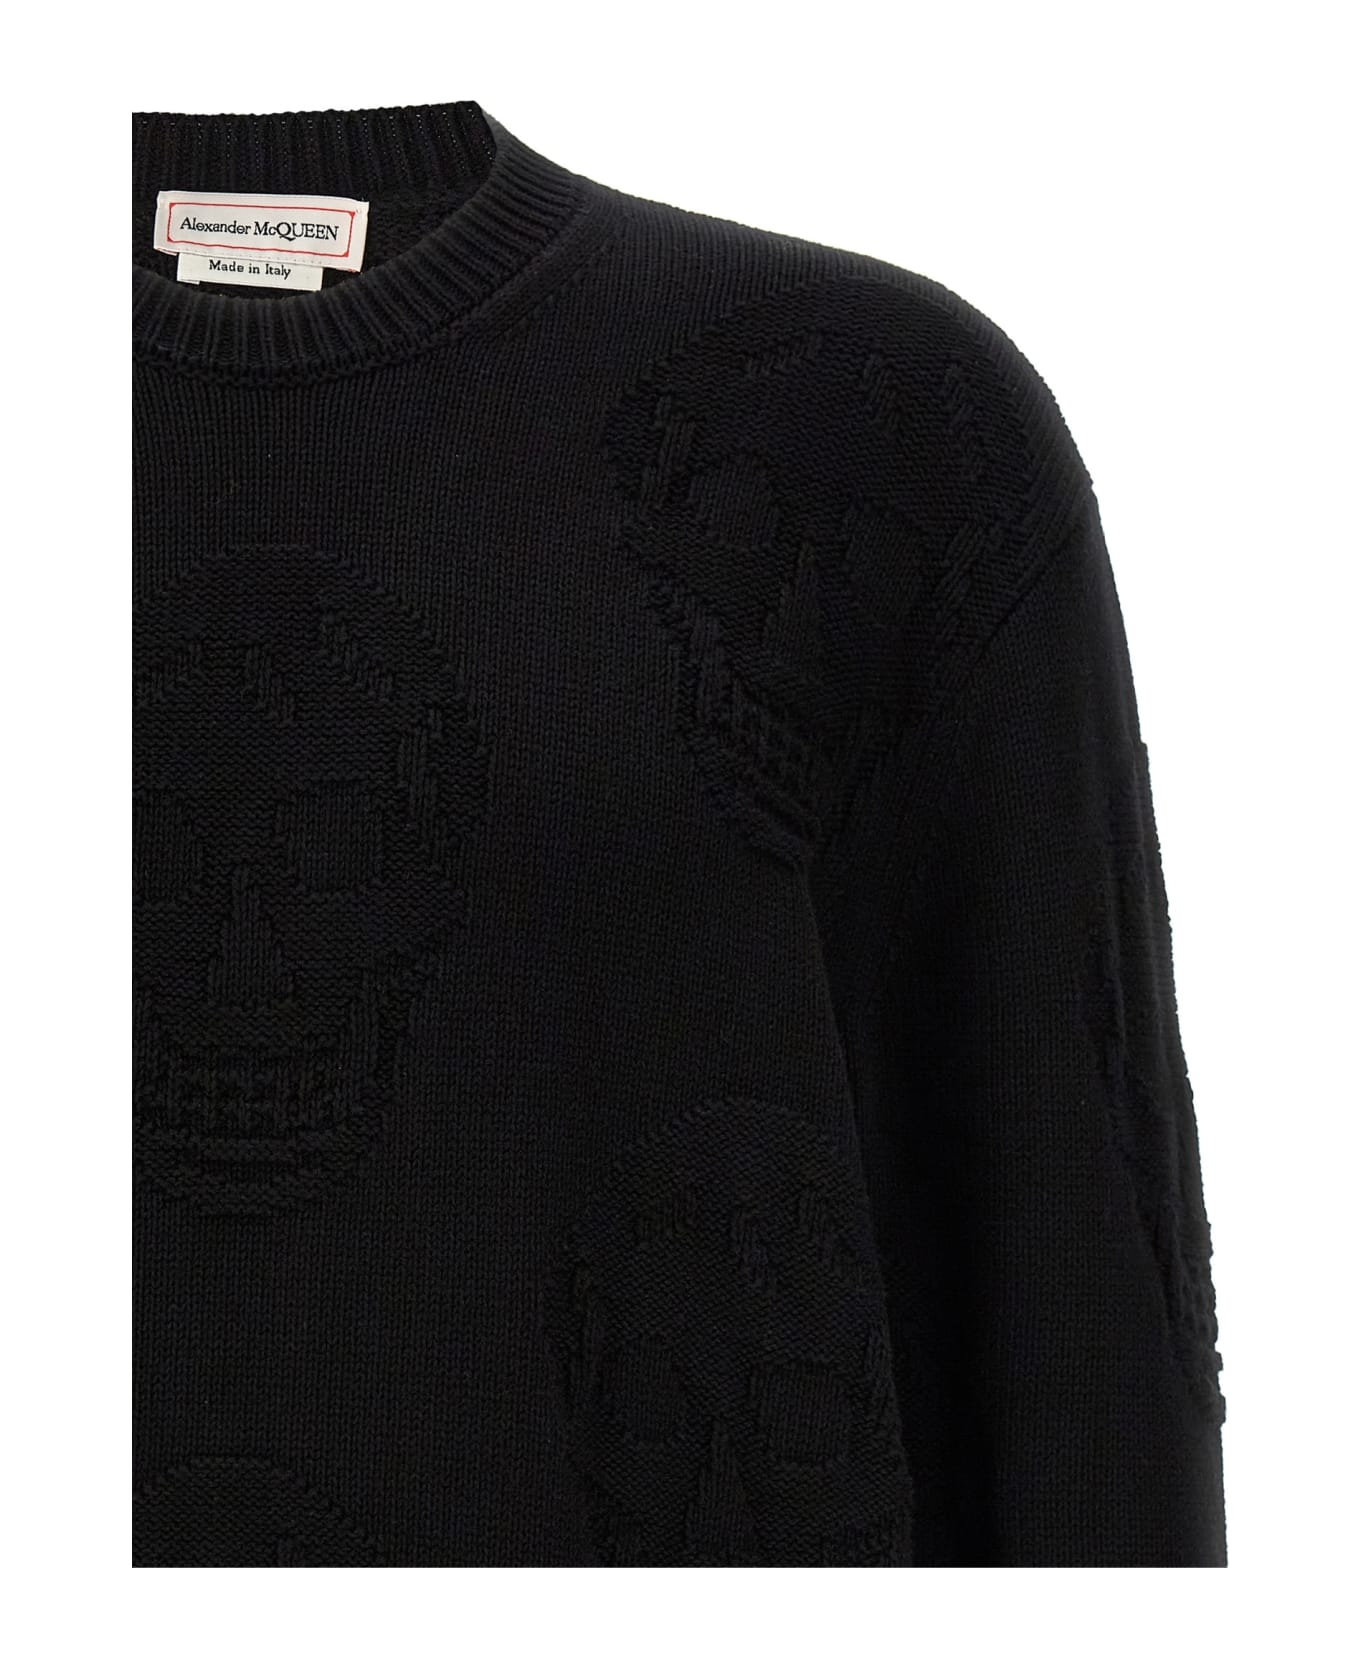 Alexander McQueen Skull Sweater - Black